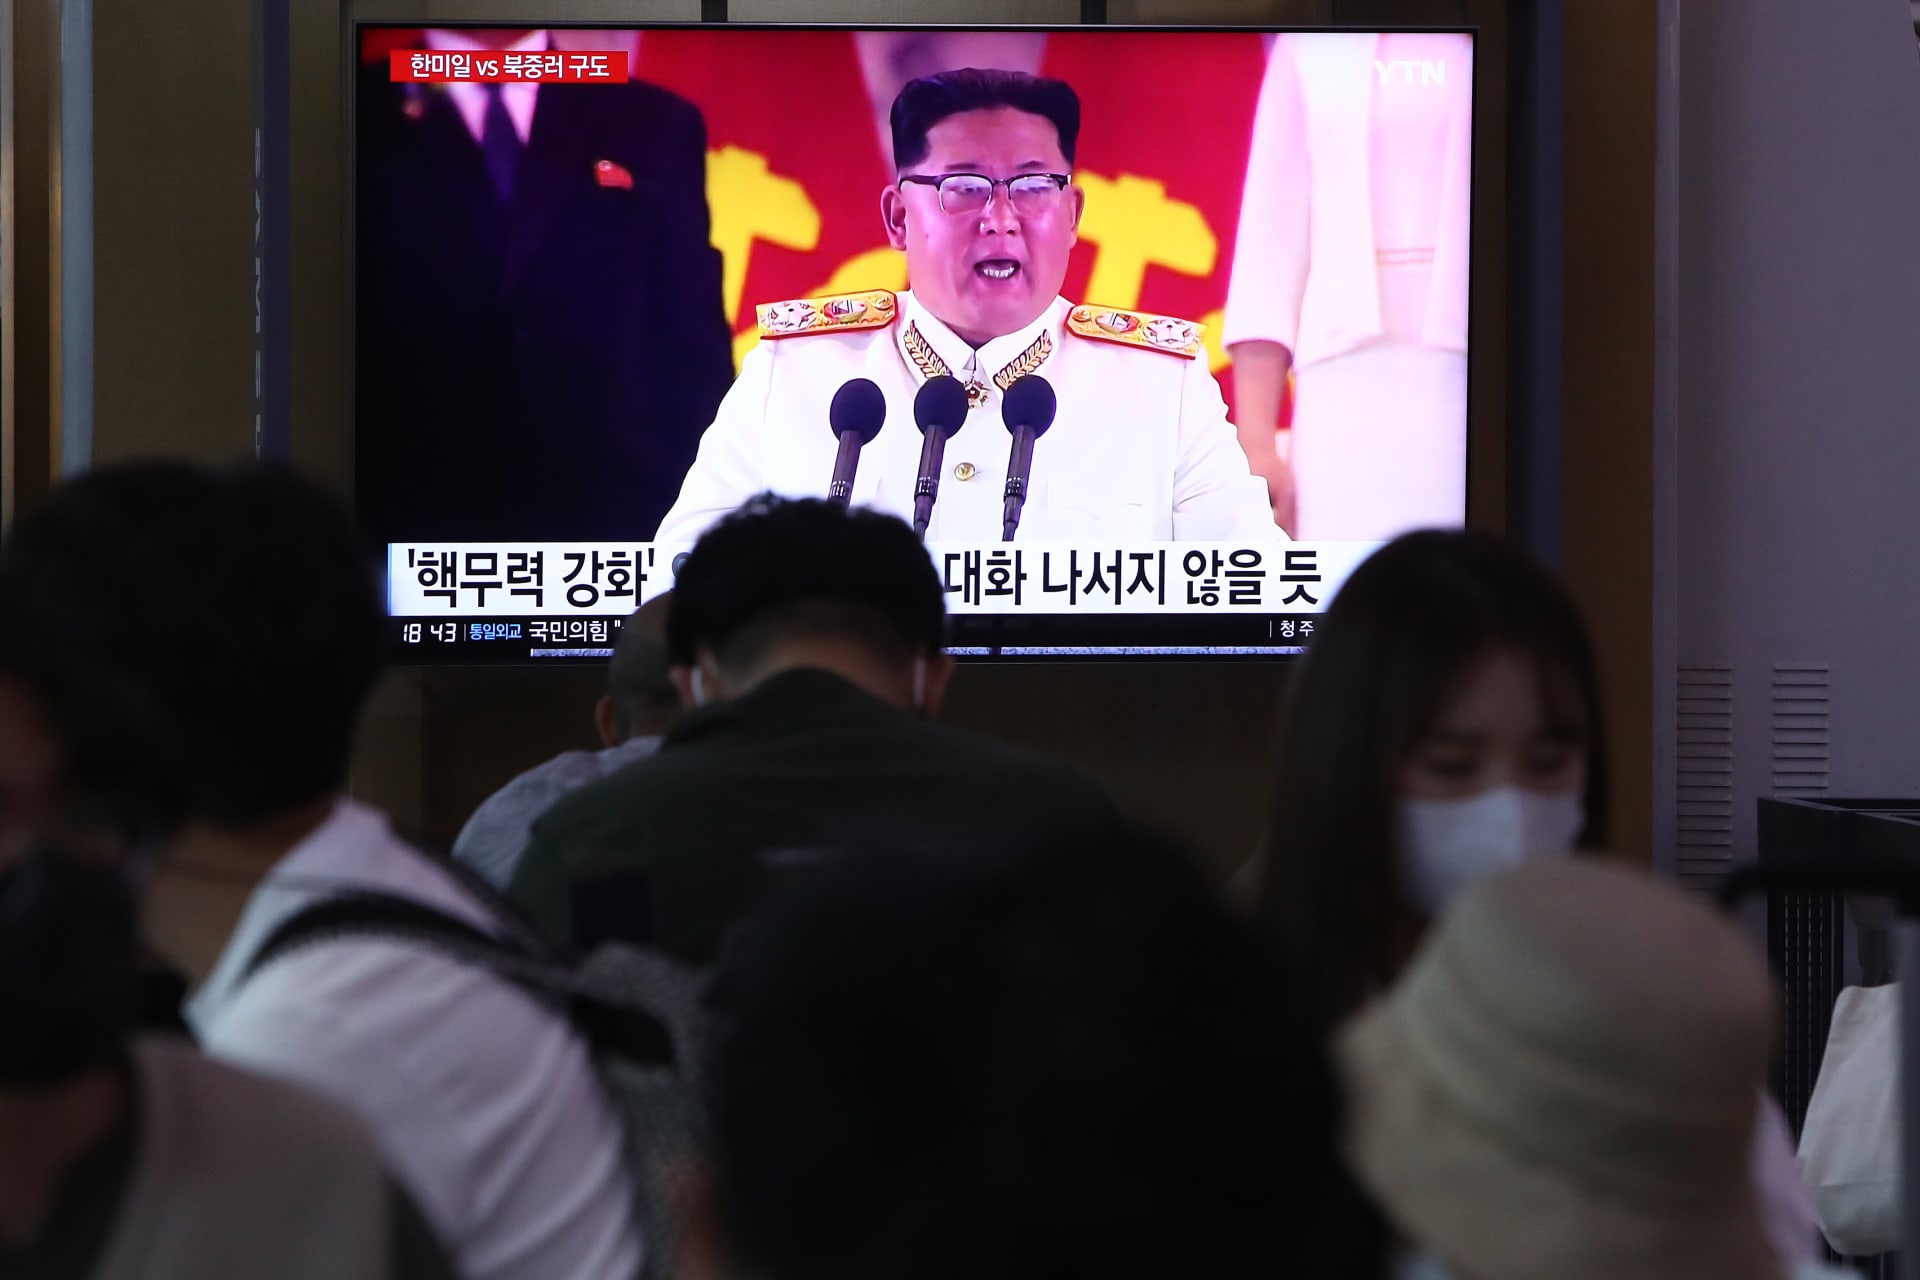 صورة أرشيفية لخطاب ألقاه زعيم كوريا الشمالية كيم جونغ أون